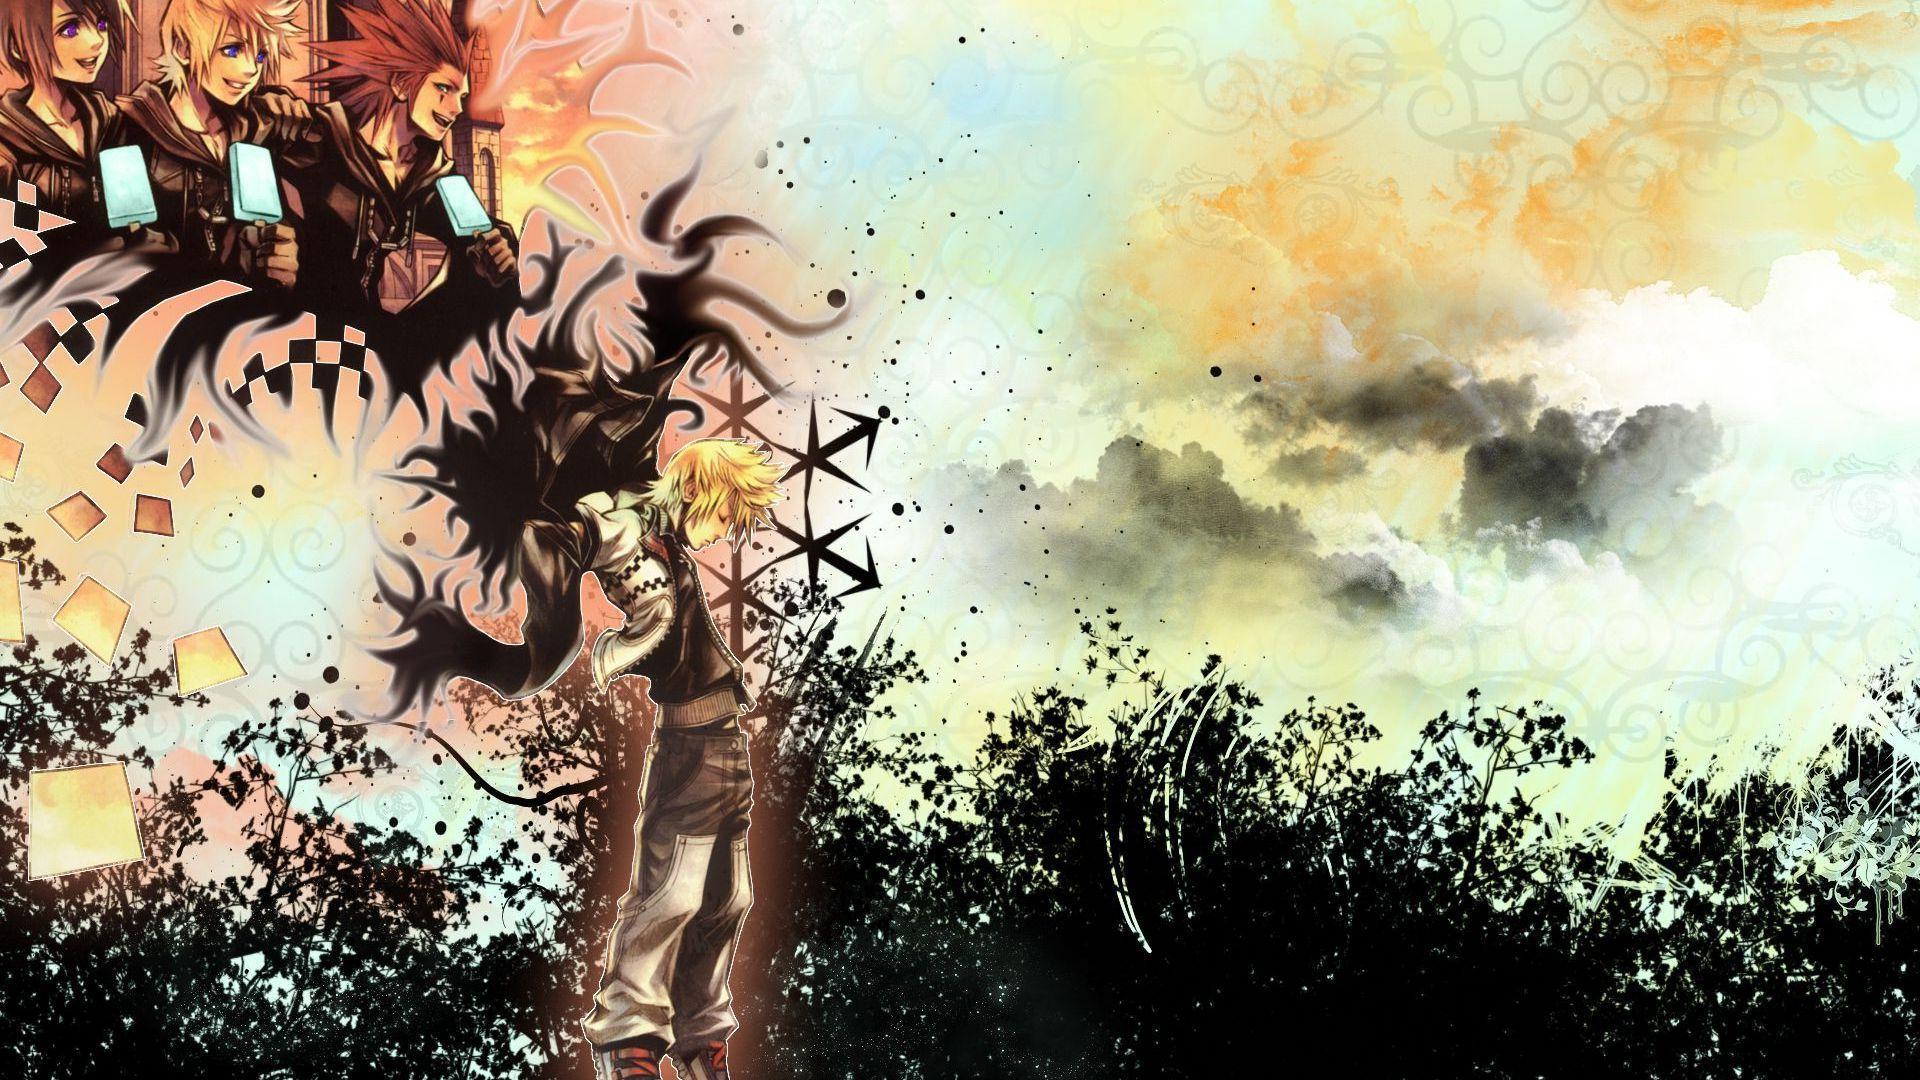 HD Riku From Kingdom Hearts Wallpaper Background